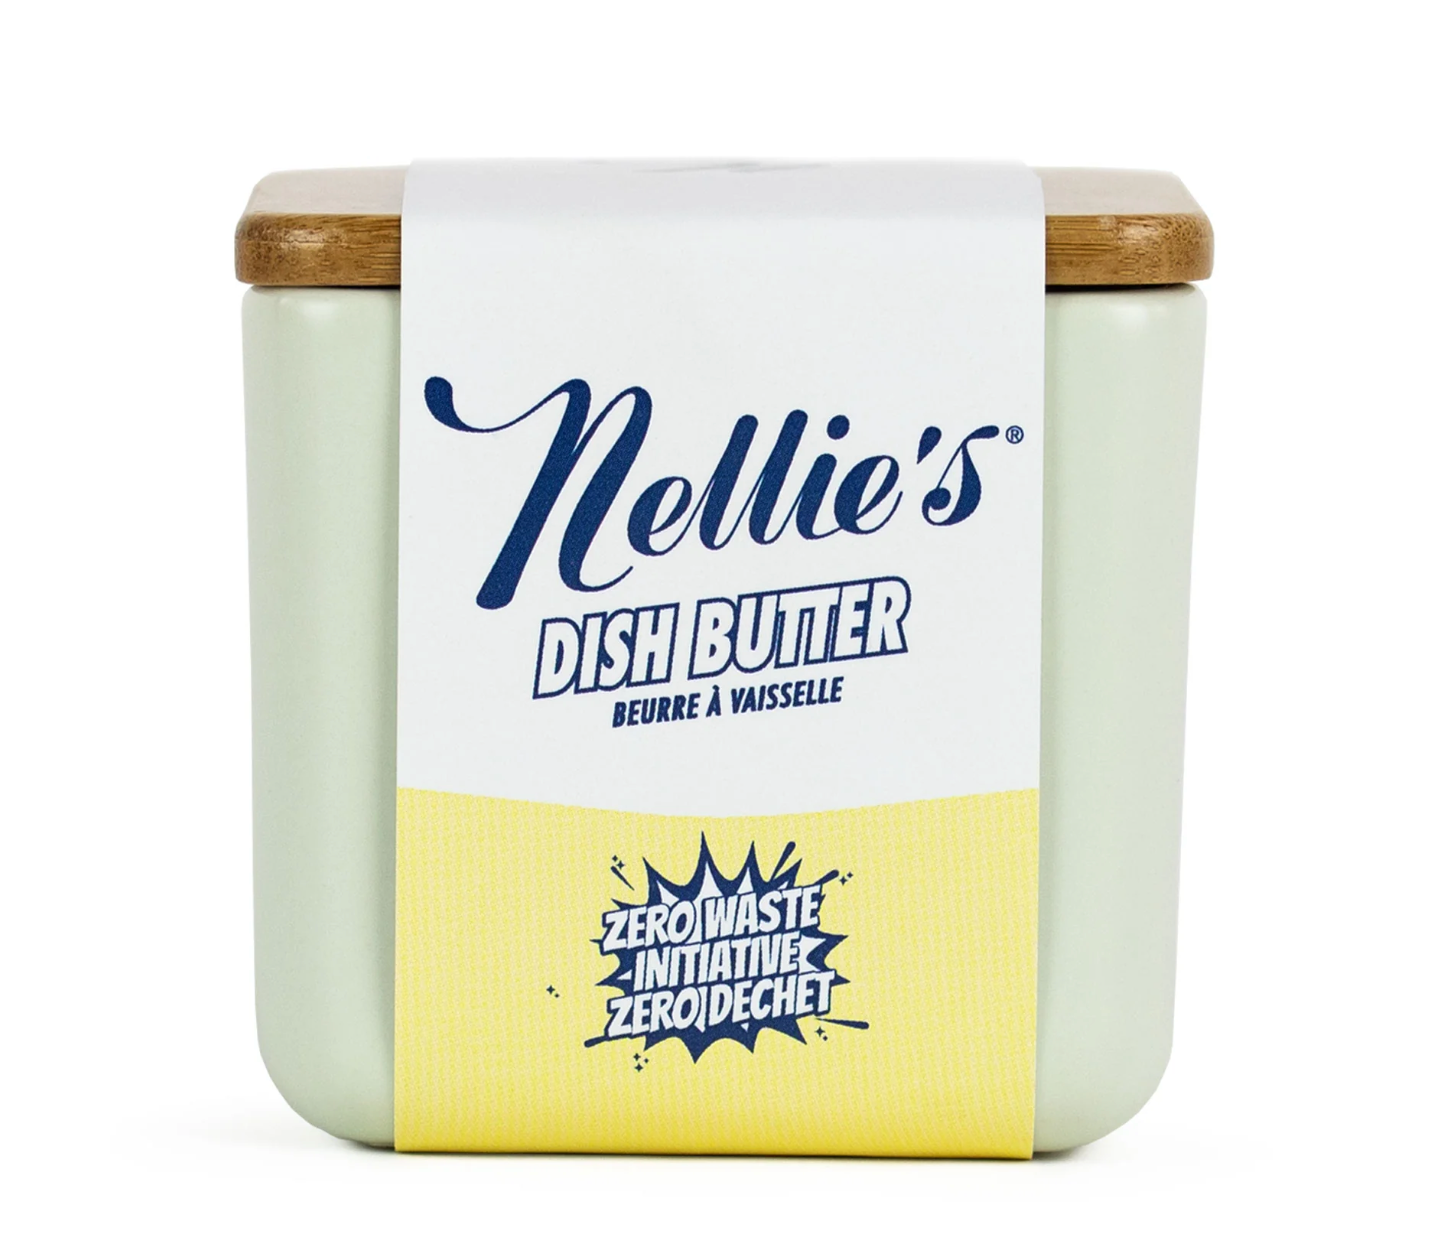 Nellie's Swedish Dishcloths, N/A